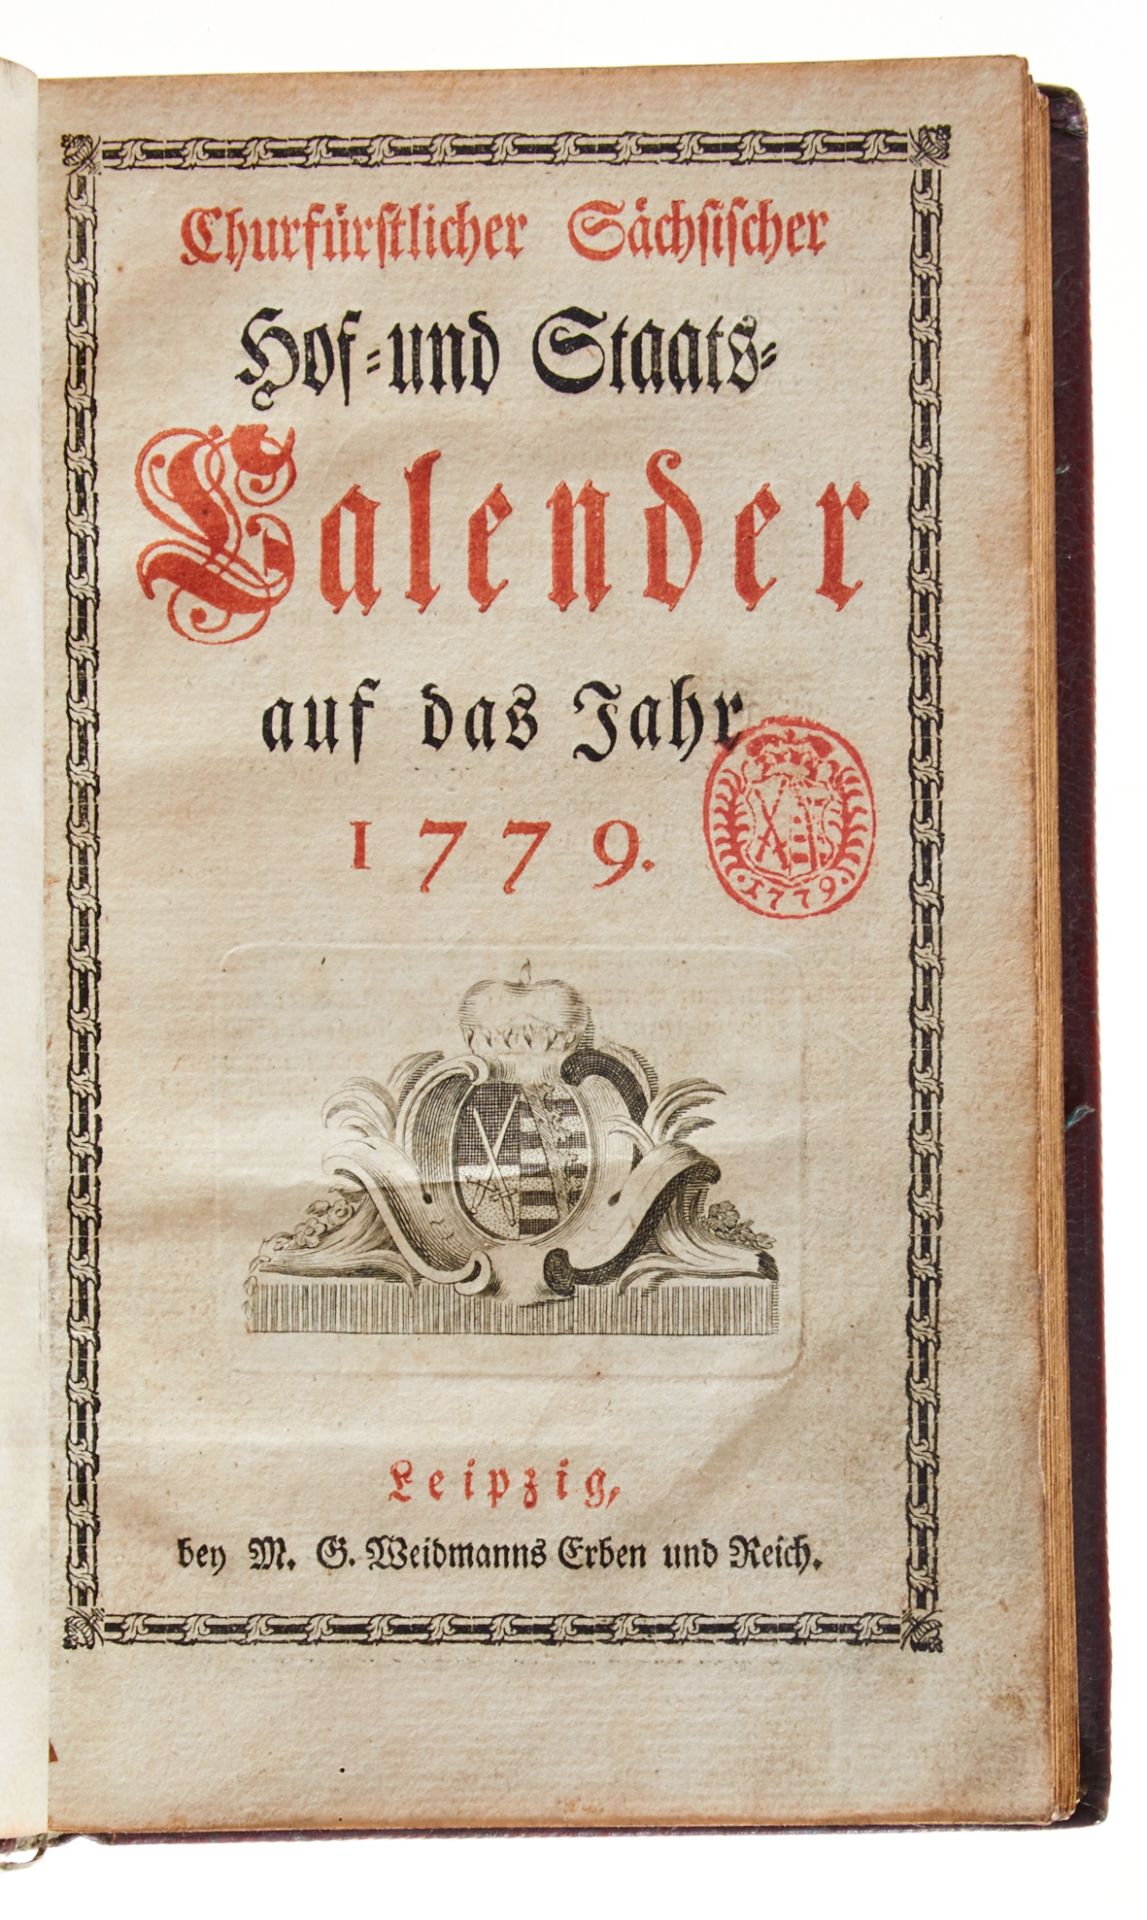 Sachsen -Churfürstlicher Sächsischer Hof- und Staats-Kalender - Image 2 of 2